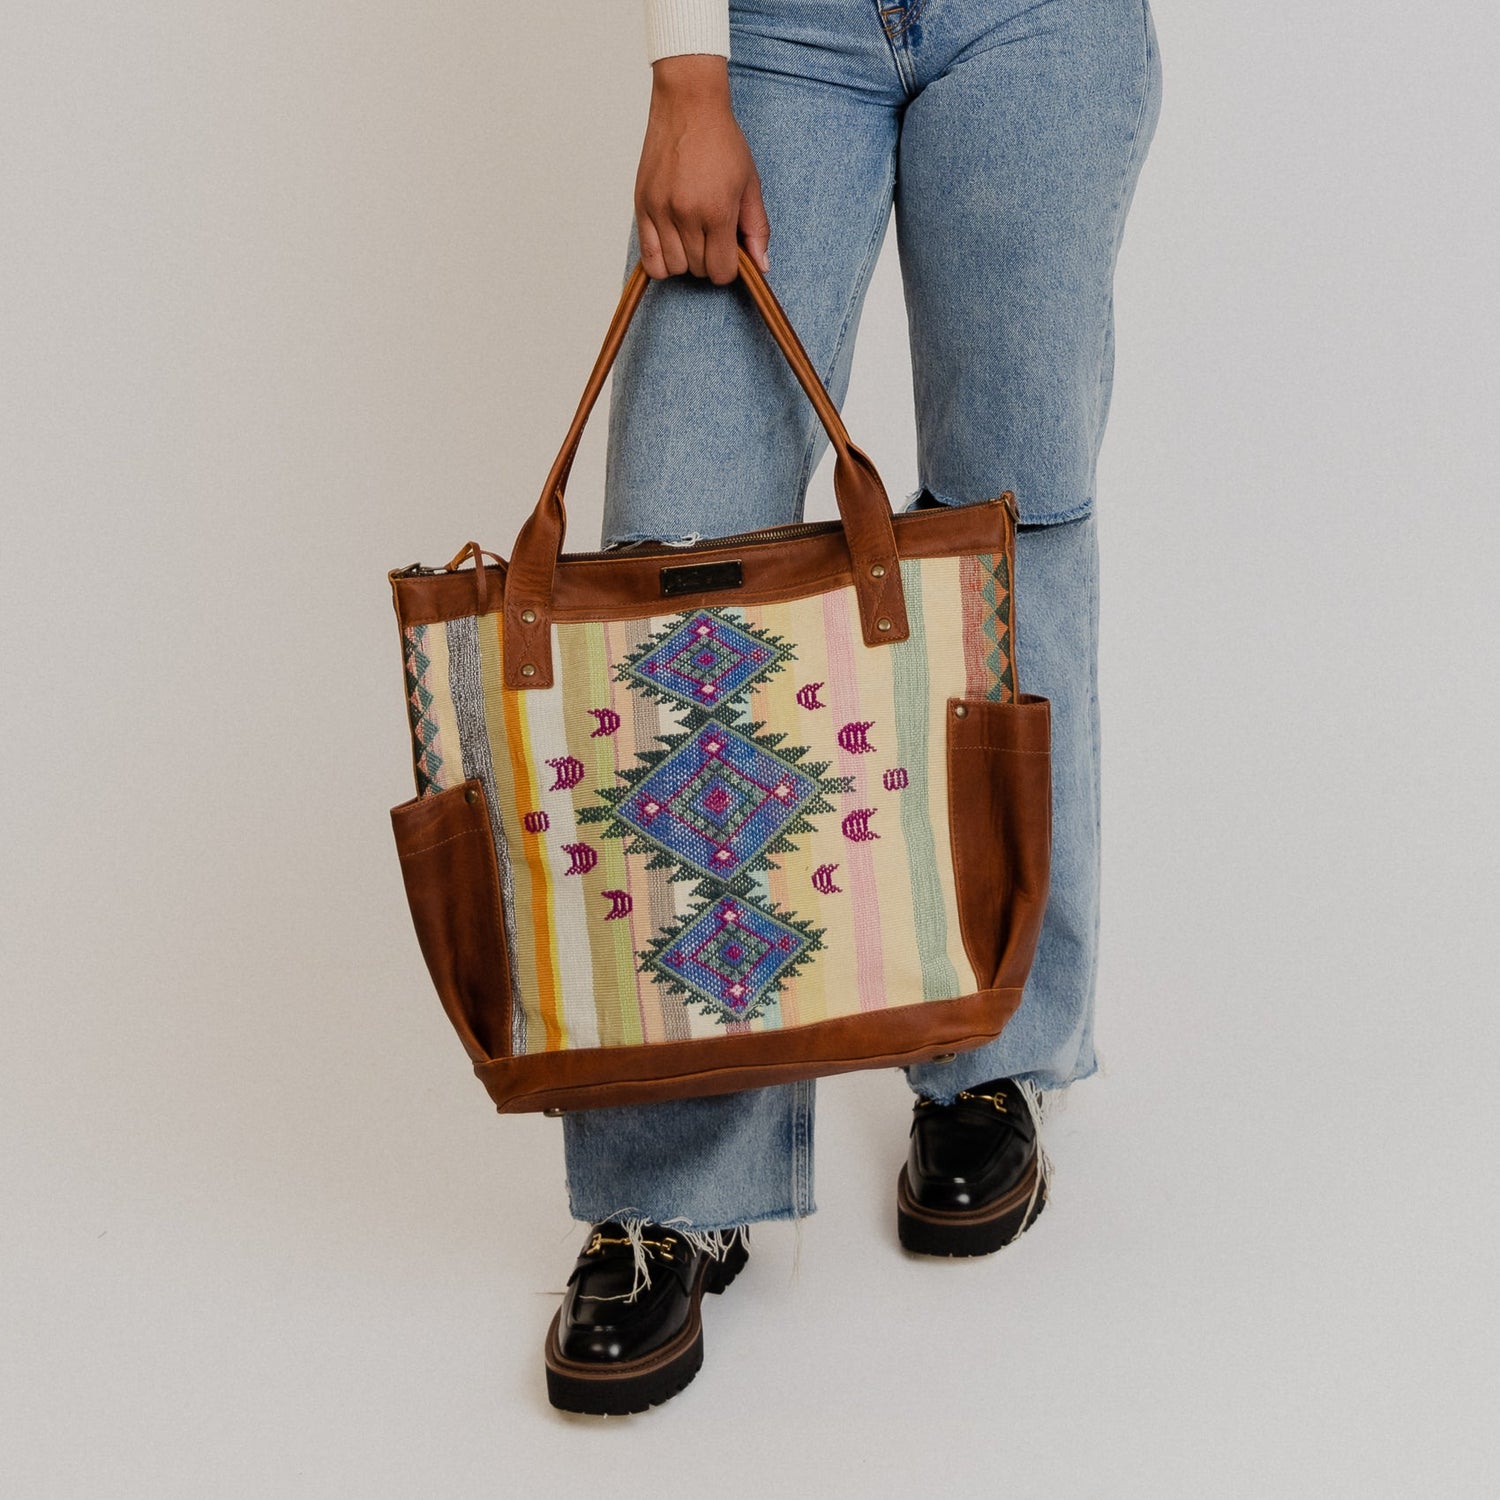 La Regale Clutch,Plum,One Size: Handbags